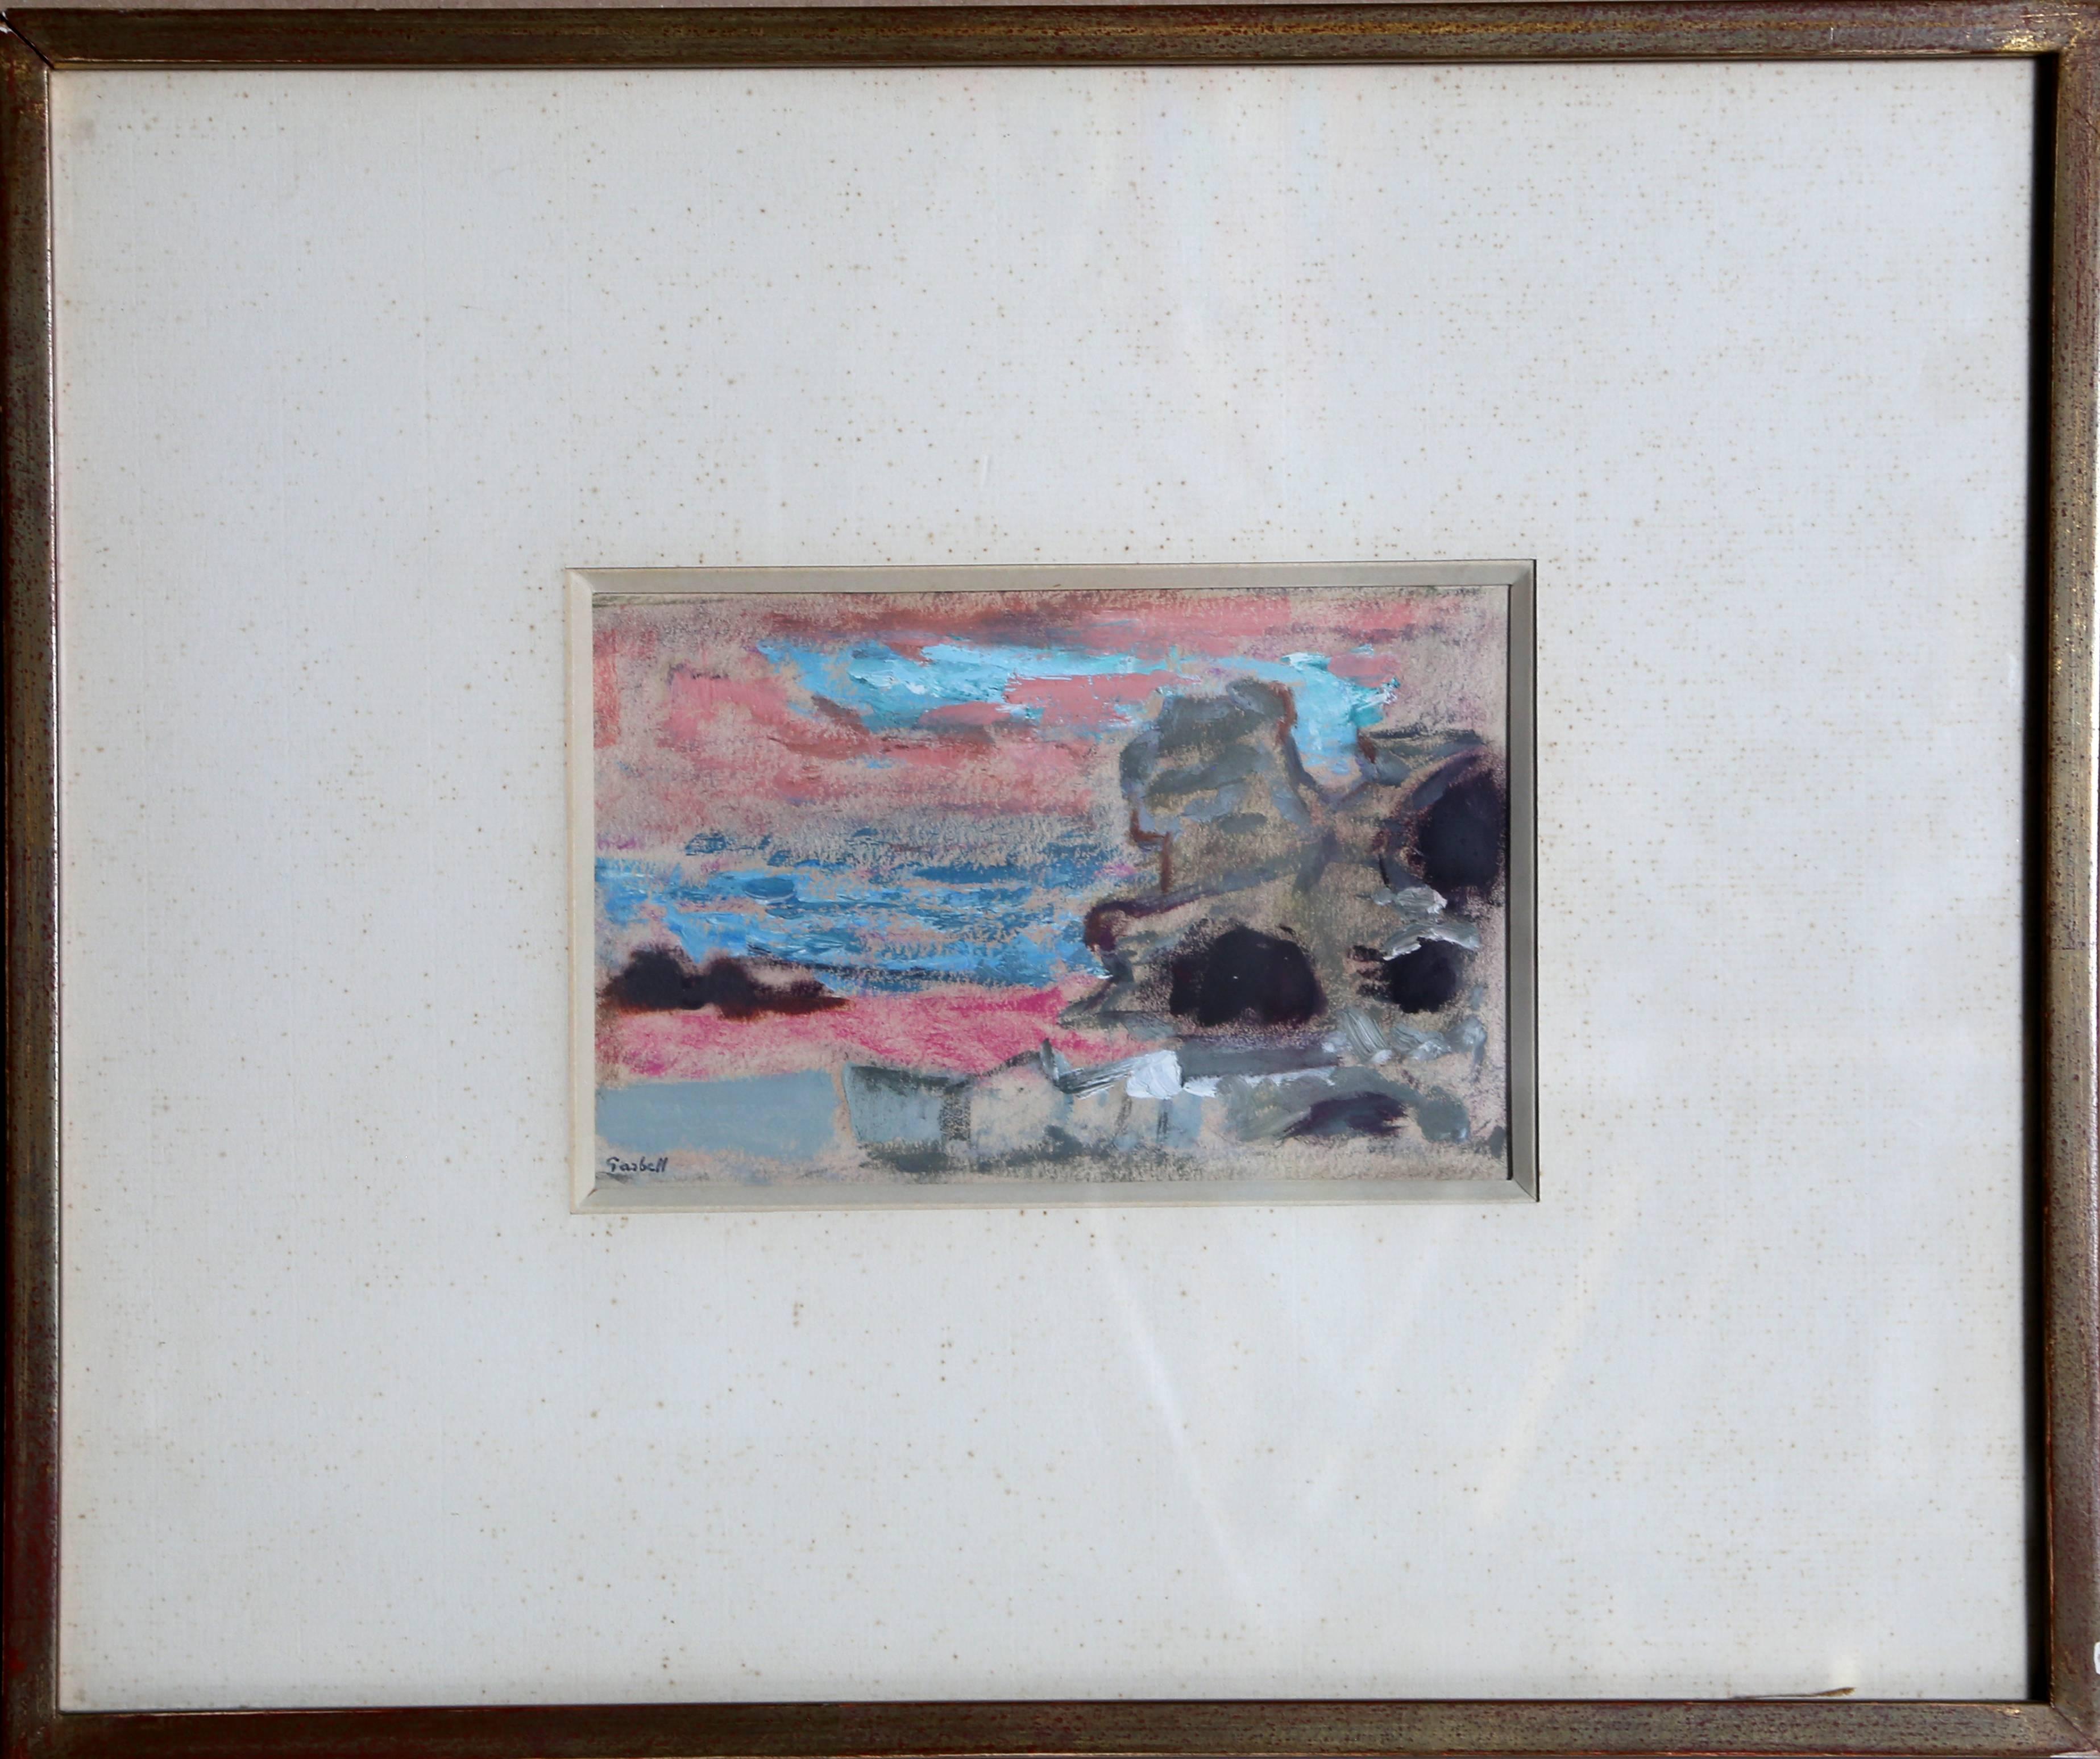 Künstler: Alexandre Sacha Garbell, Franzose (1903 - 1970)
Titel: Israel
Jahr: ca. 1958
Medium: Gouache auf Papier, signiert 
Bildgröße: 4,5 x 6,5 Zoll
Rahmengröße: 12,75 x 15,25 Zoll